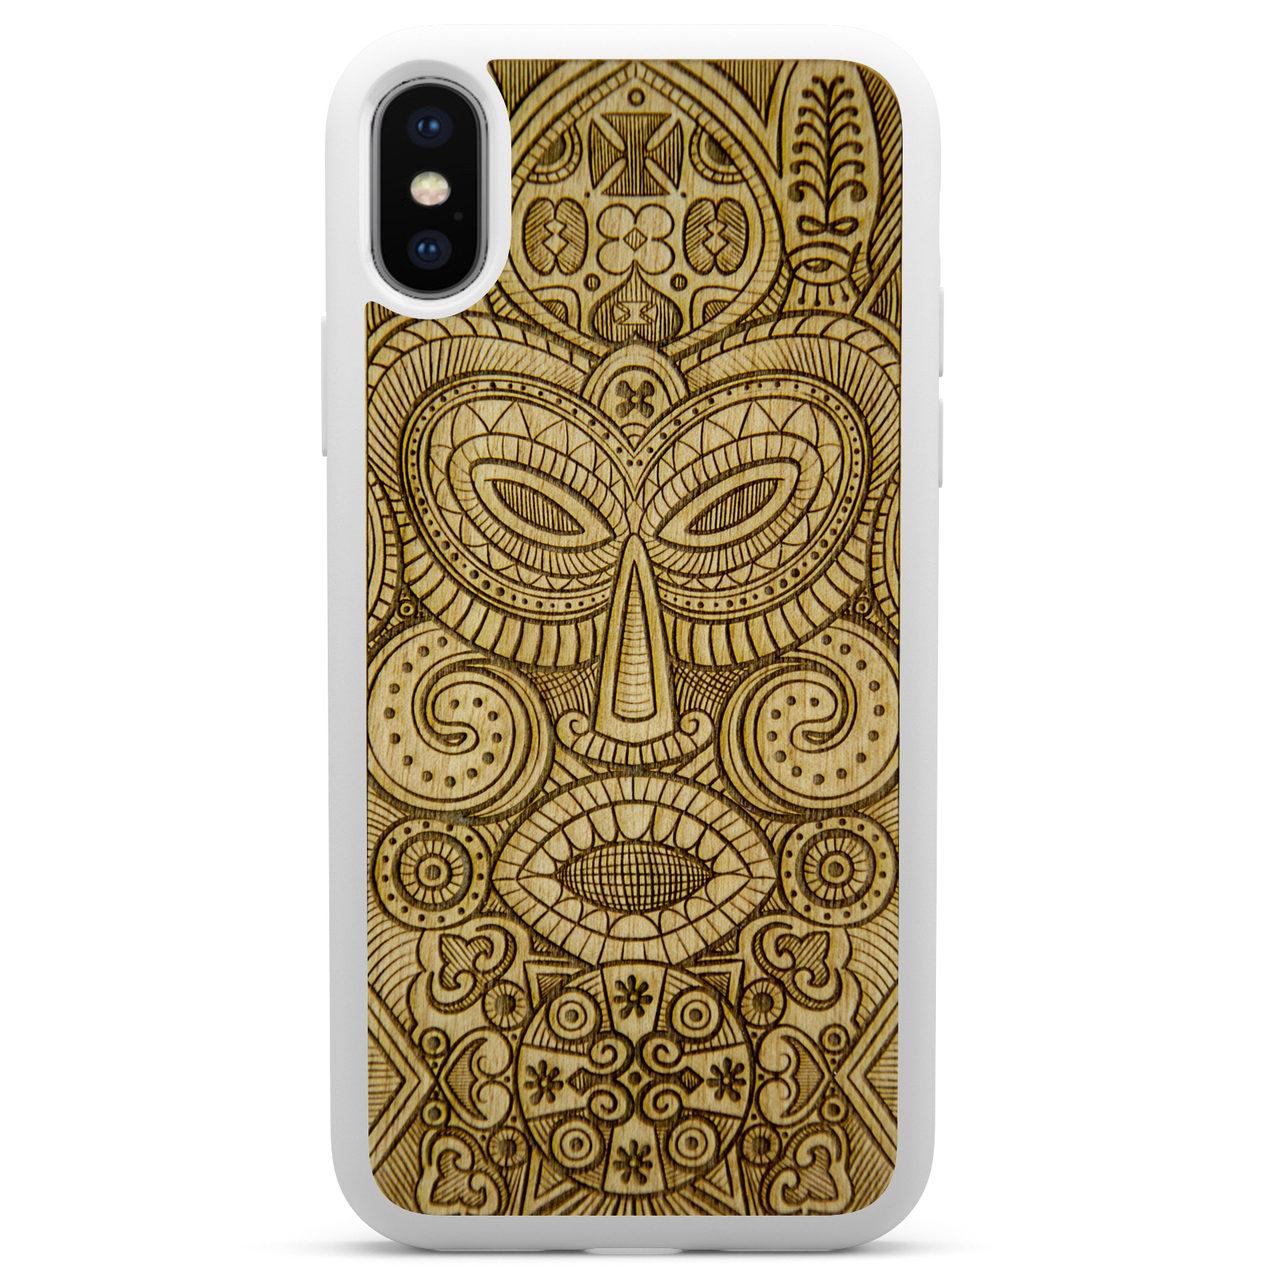 Custodia per telefono in legno bianco con maschera tribale per iPhone X XS